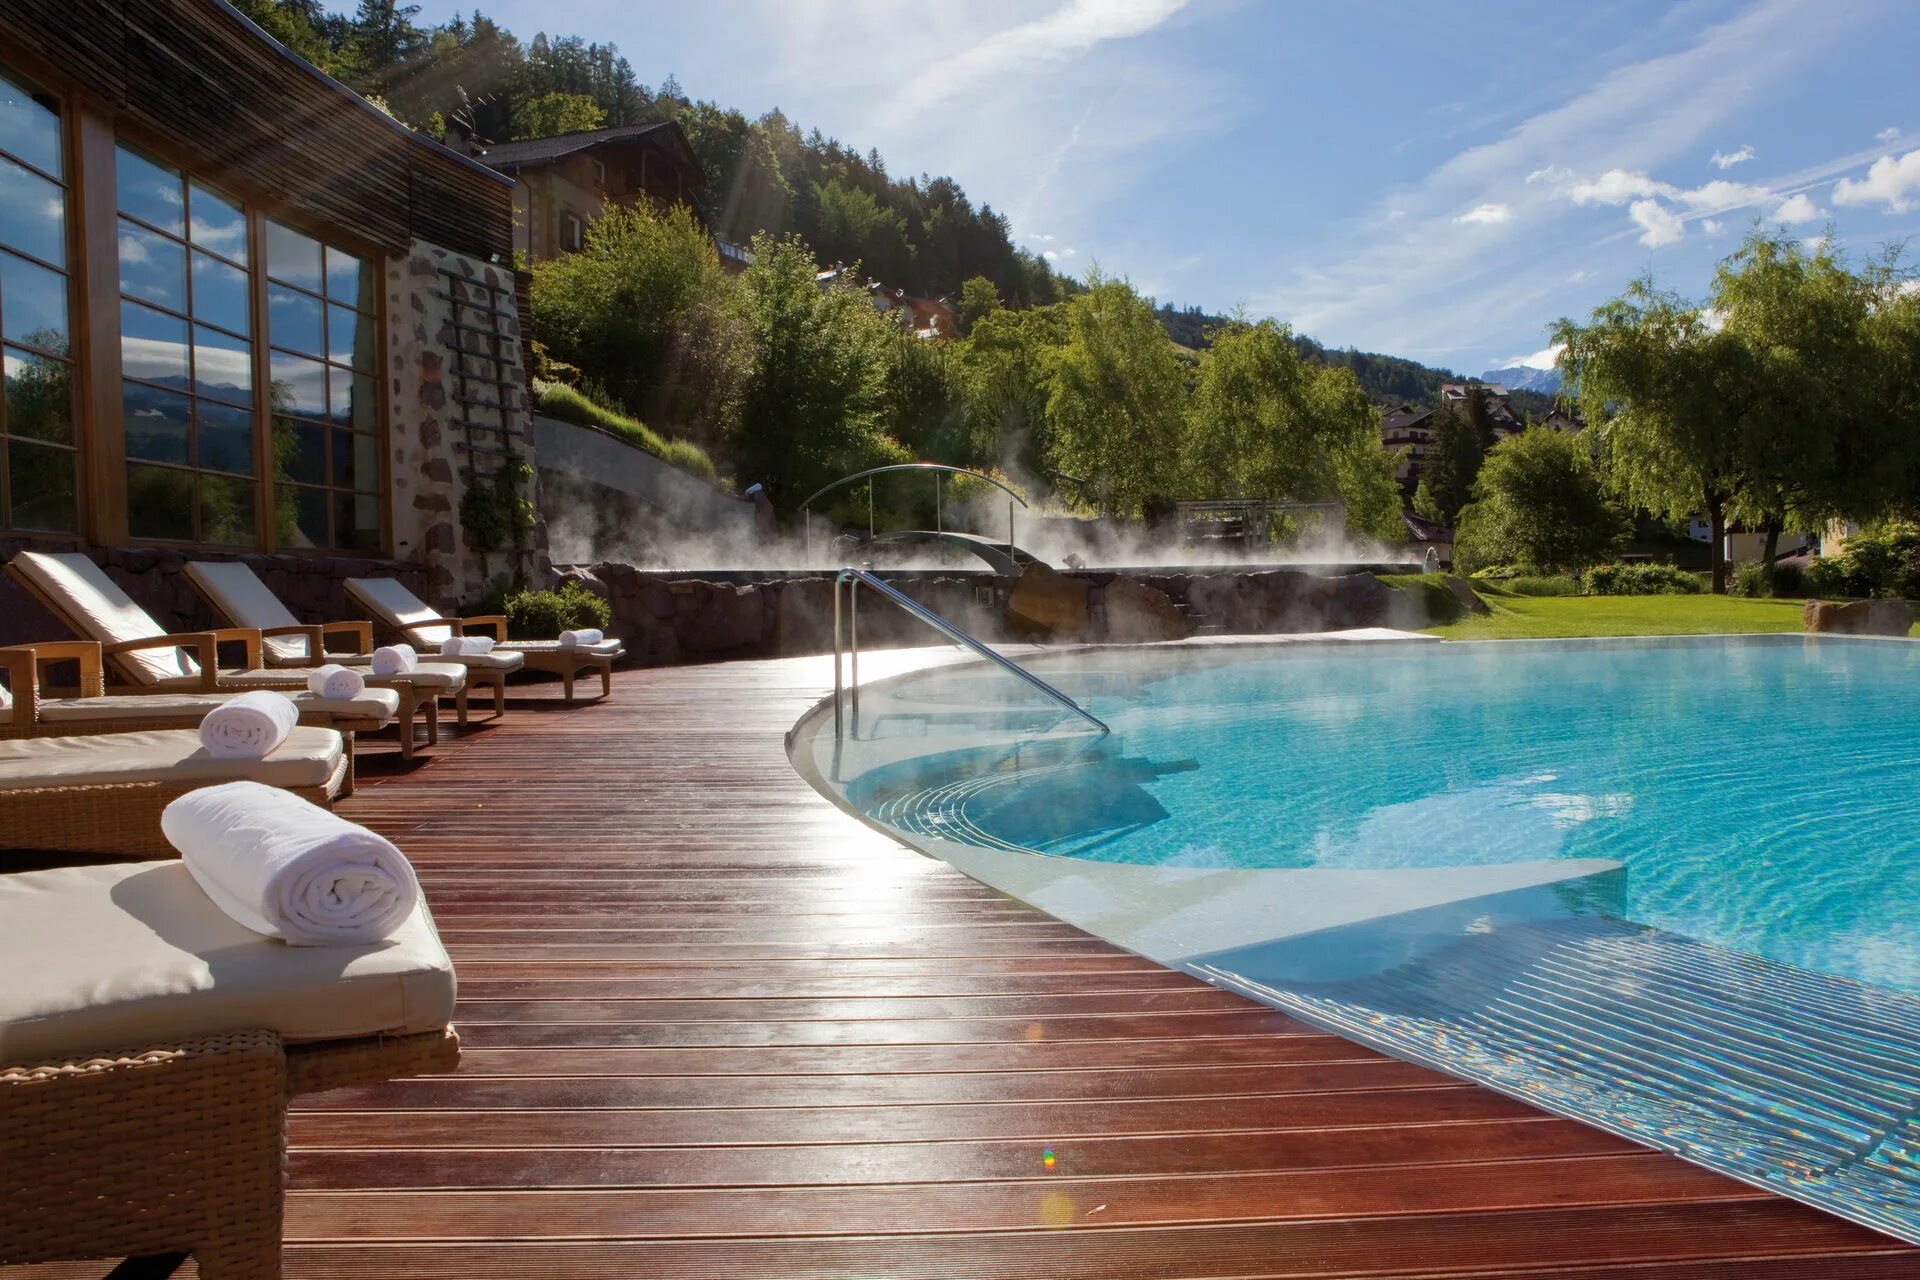 Спа отели крыма акции. Lefay Resort Spa Dolomiti. Adler Spa Resort Balance. Домик отель с горячим бассейном. Домик в горах с термальным бассейном.